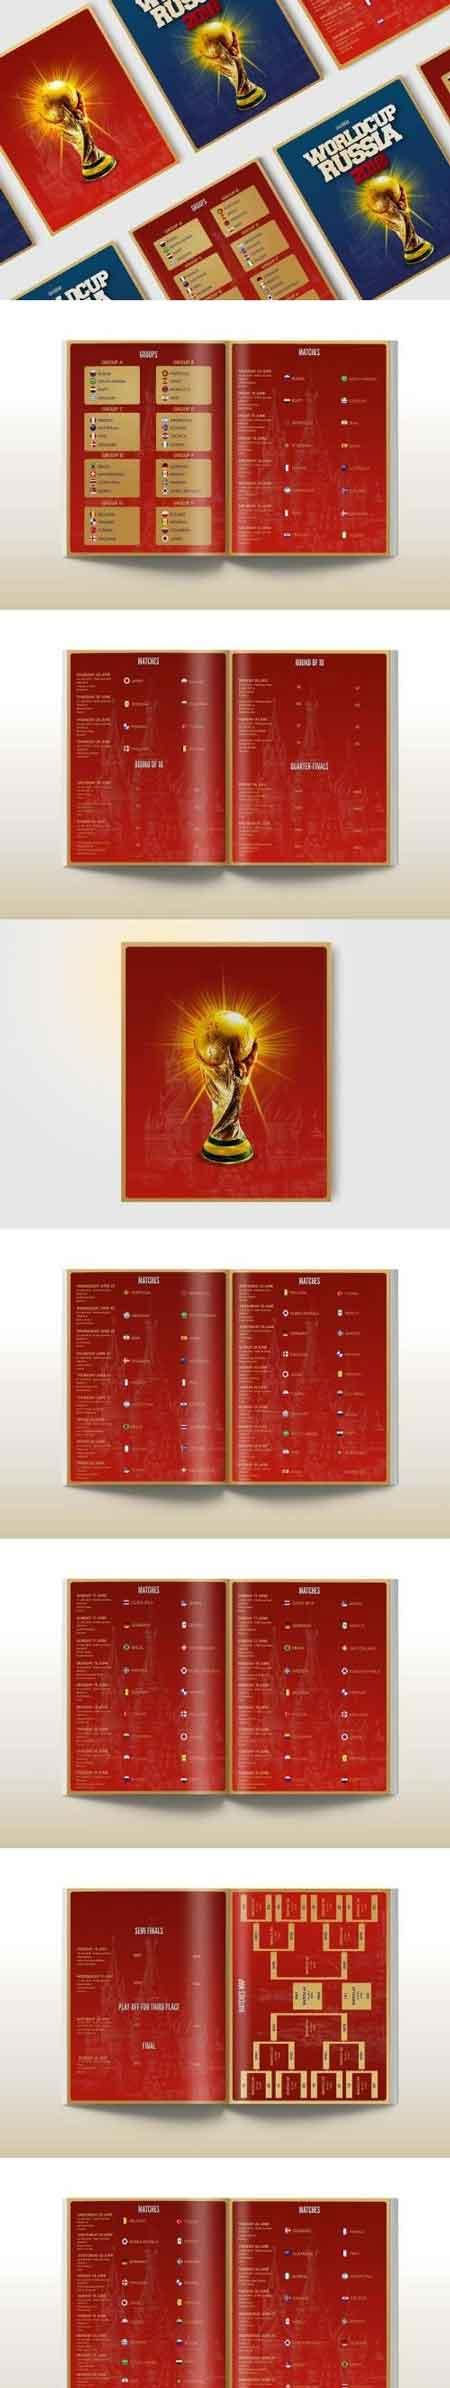 2018世界杯足球比赛赛程日历画册手册模板下载[PSD]插图